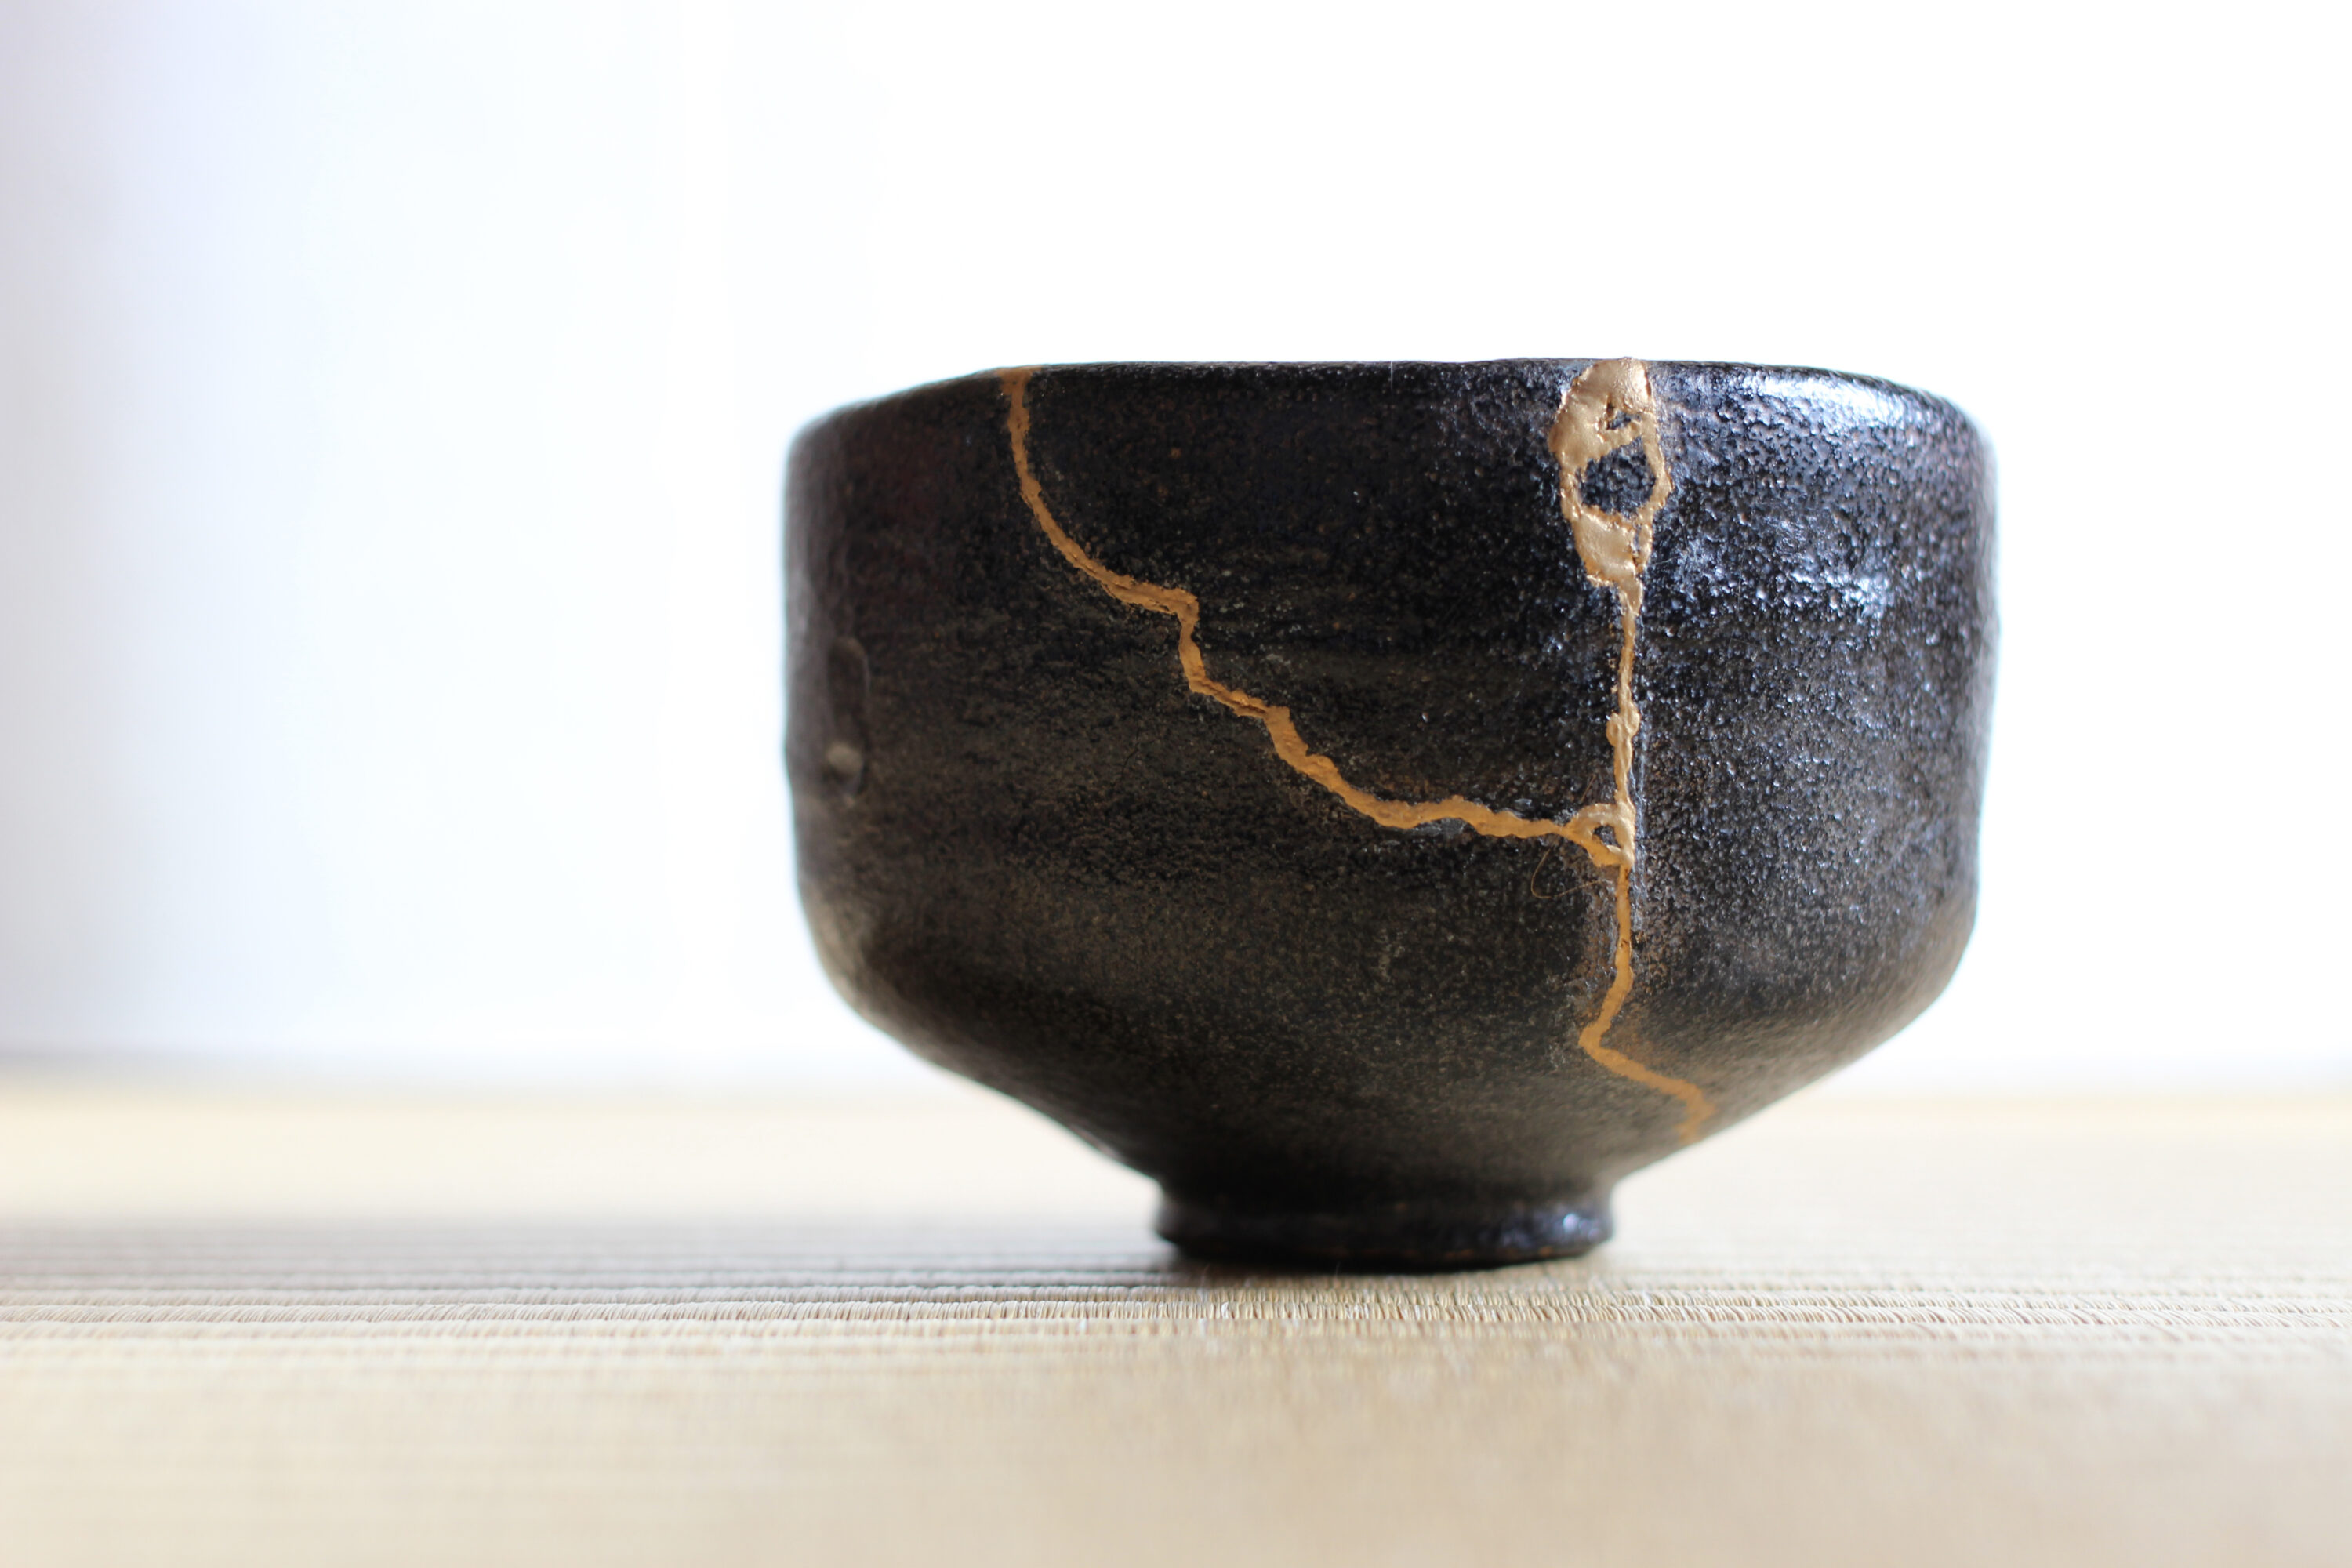 A Kintsugi bowl